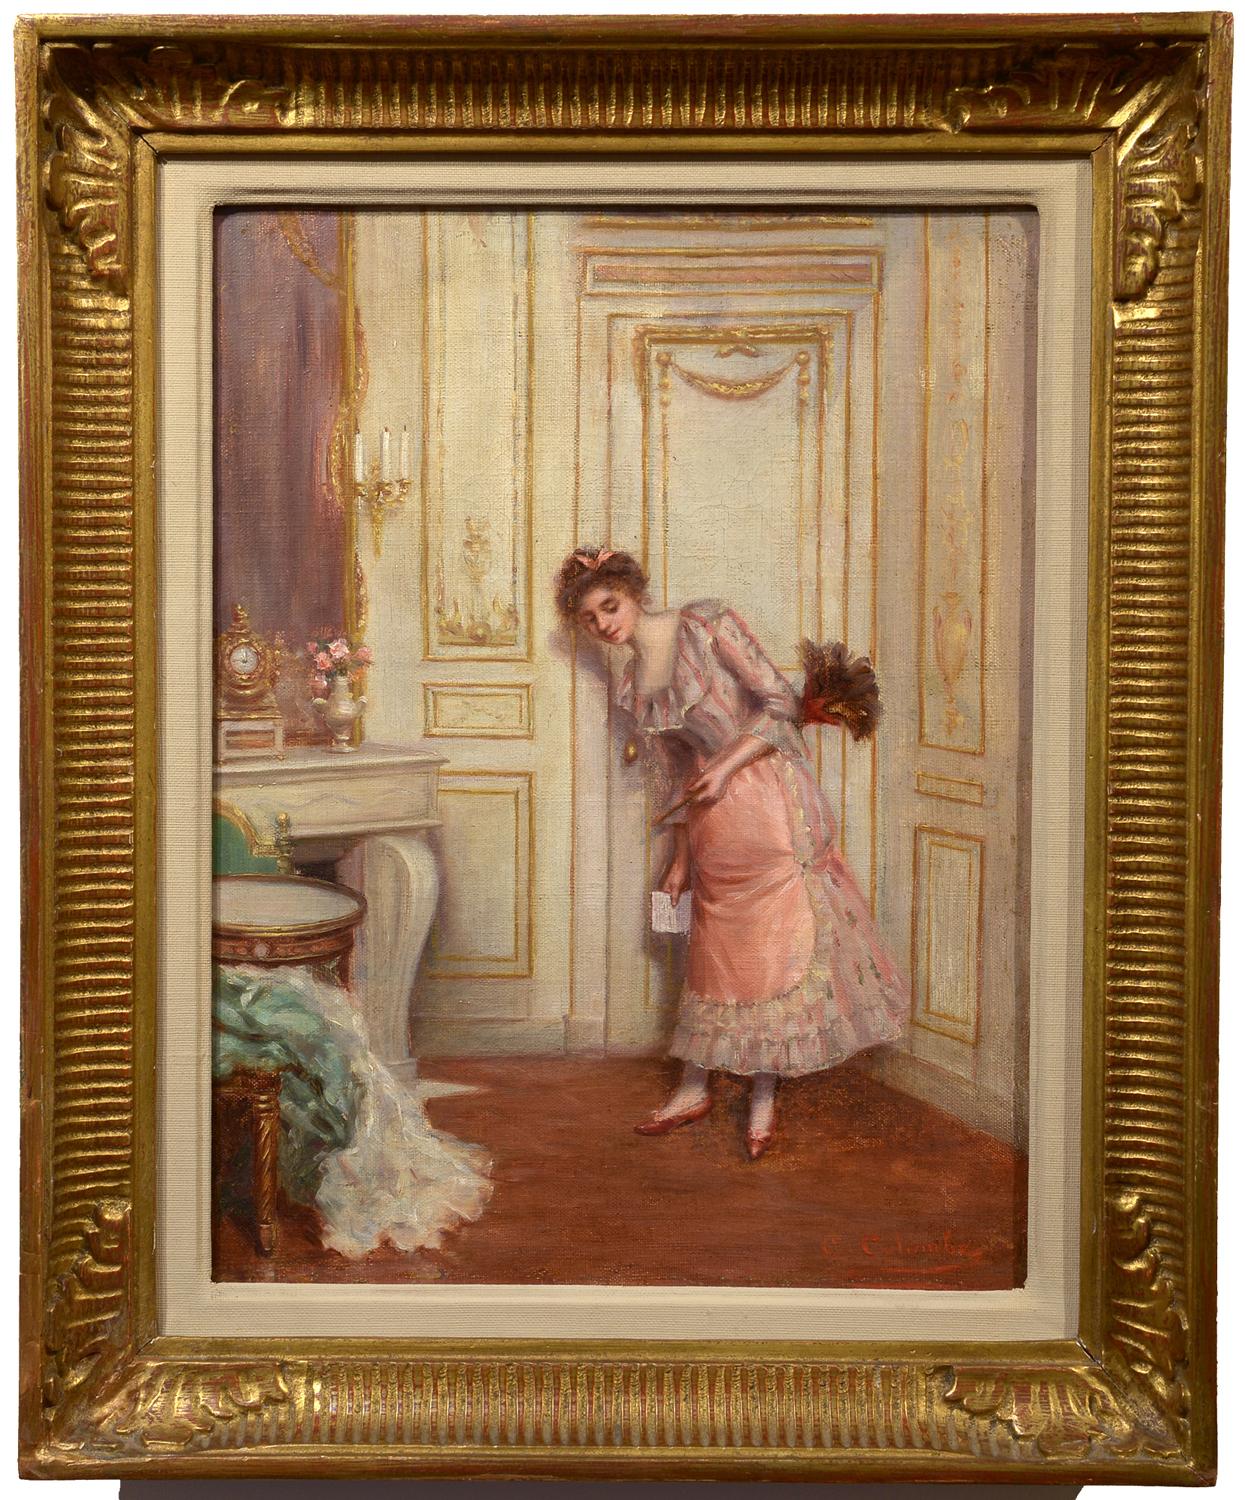 « À la porte, », scène d'intérieur domestique réaliste européenne de la fin du 19e siècle  - Painting de C. Colombe